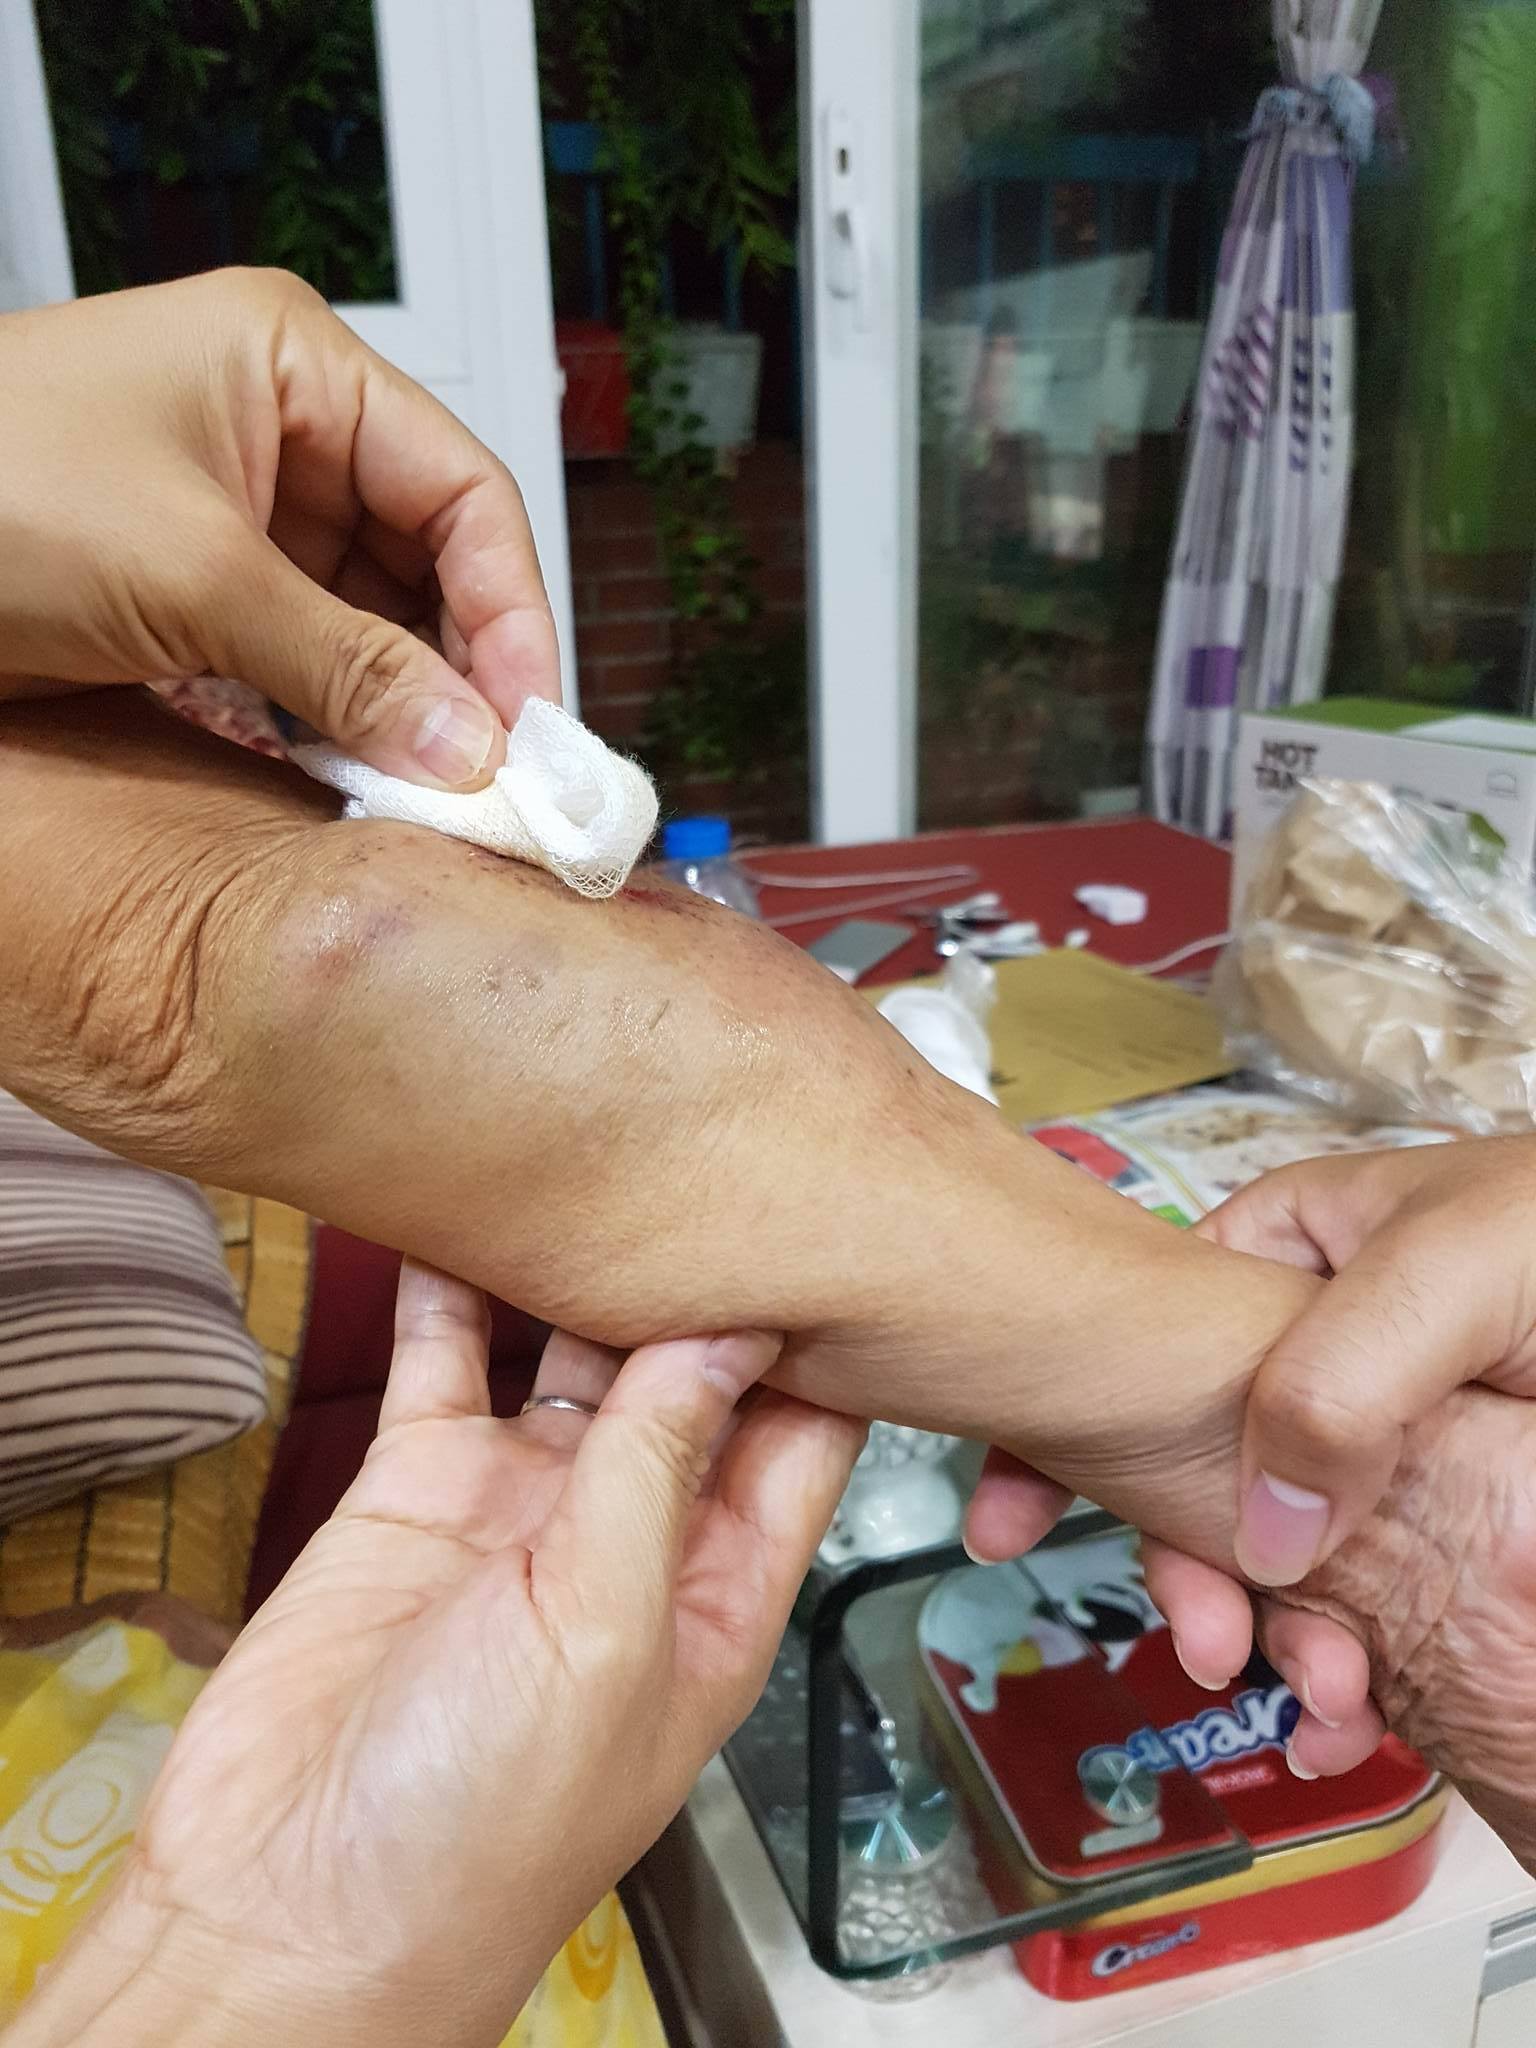 Bà cụ 80 tuổi bị đâm ở Thanh Xuân tài xế bỏ trốn 2